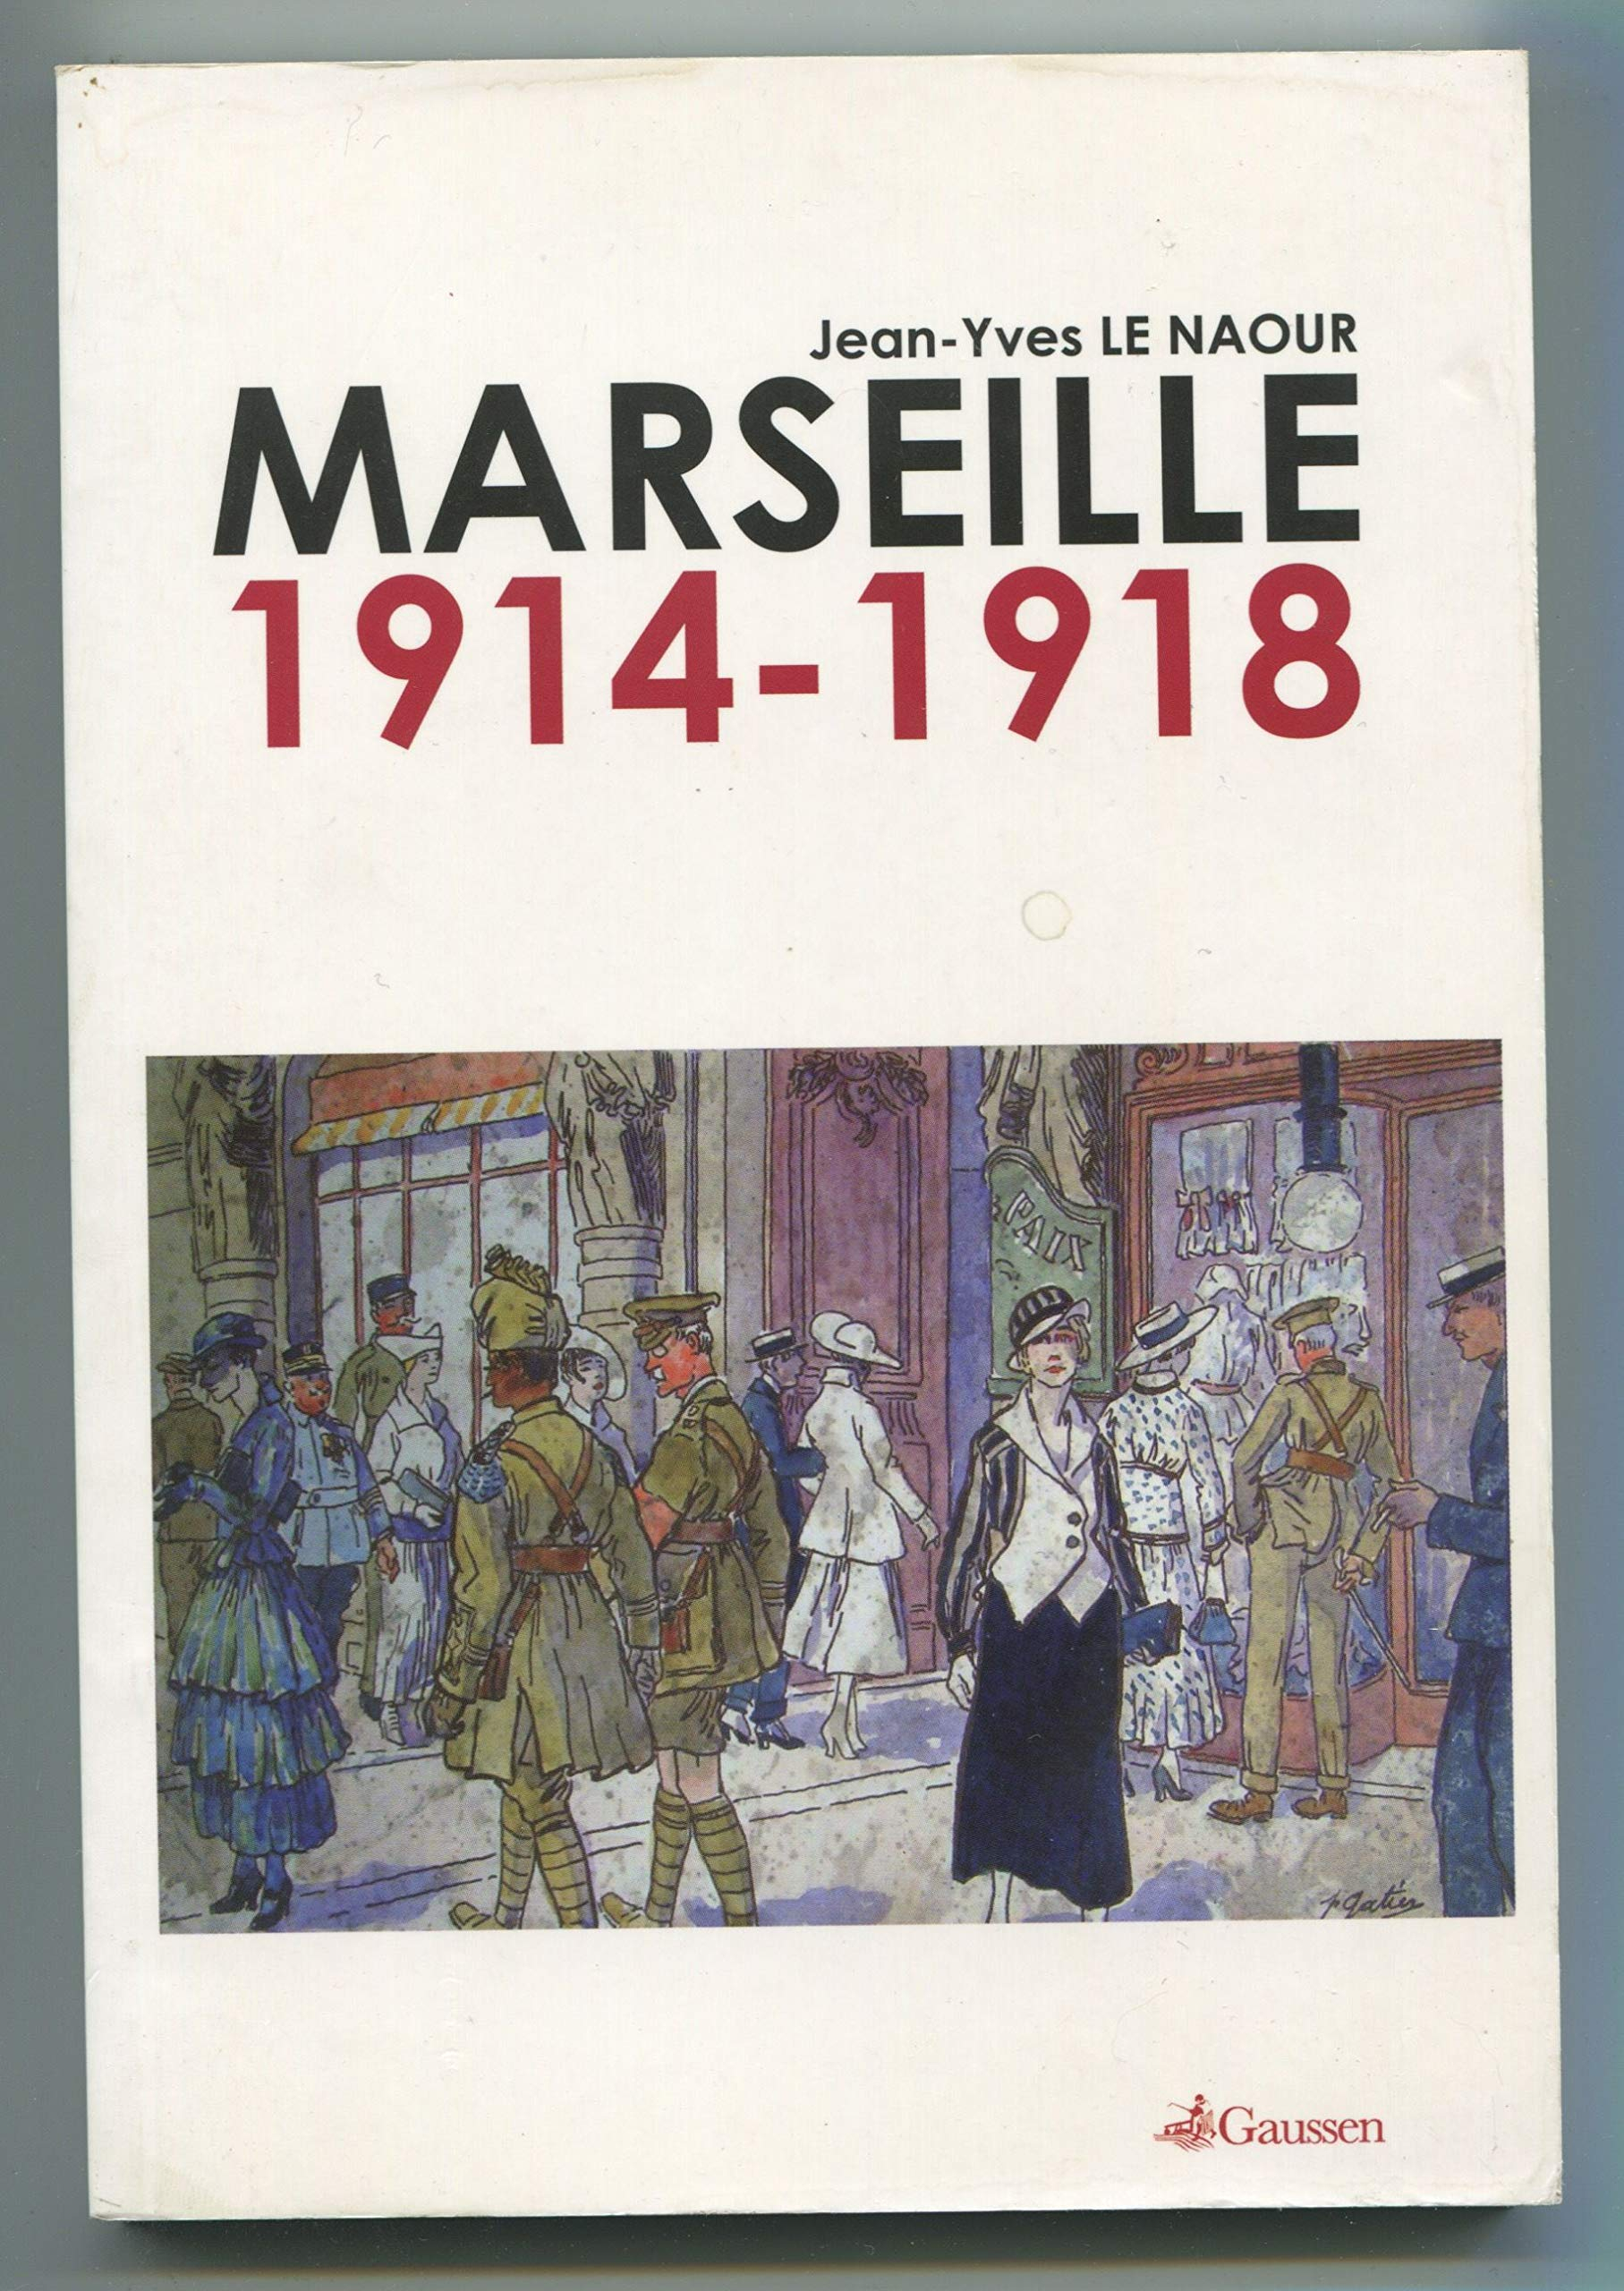 Marseille, 1914-1918